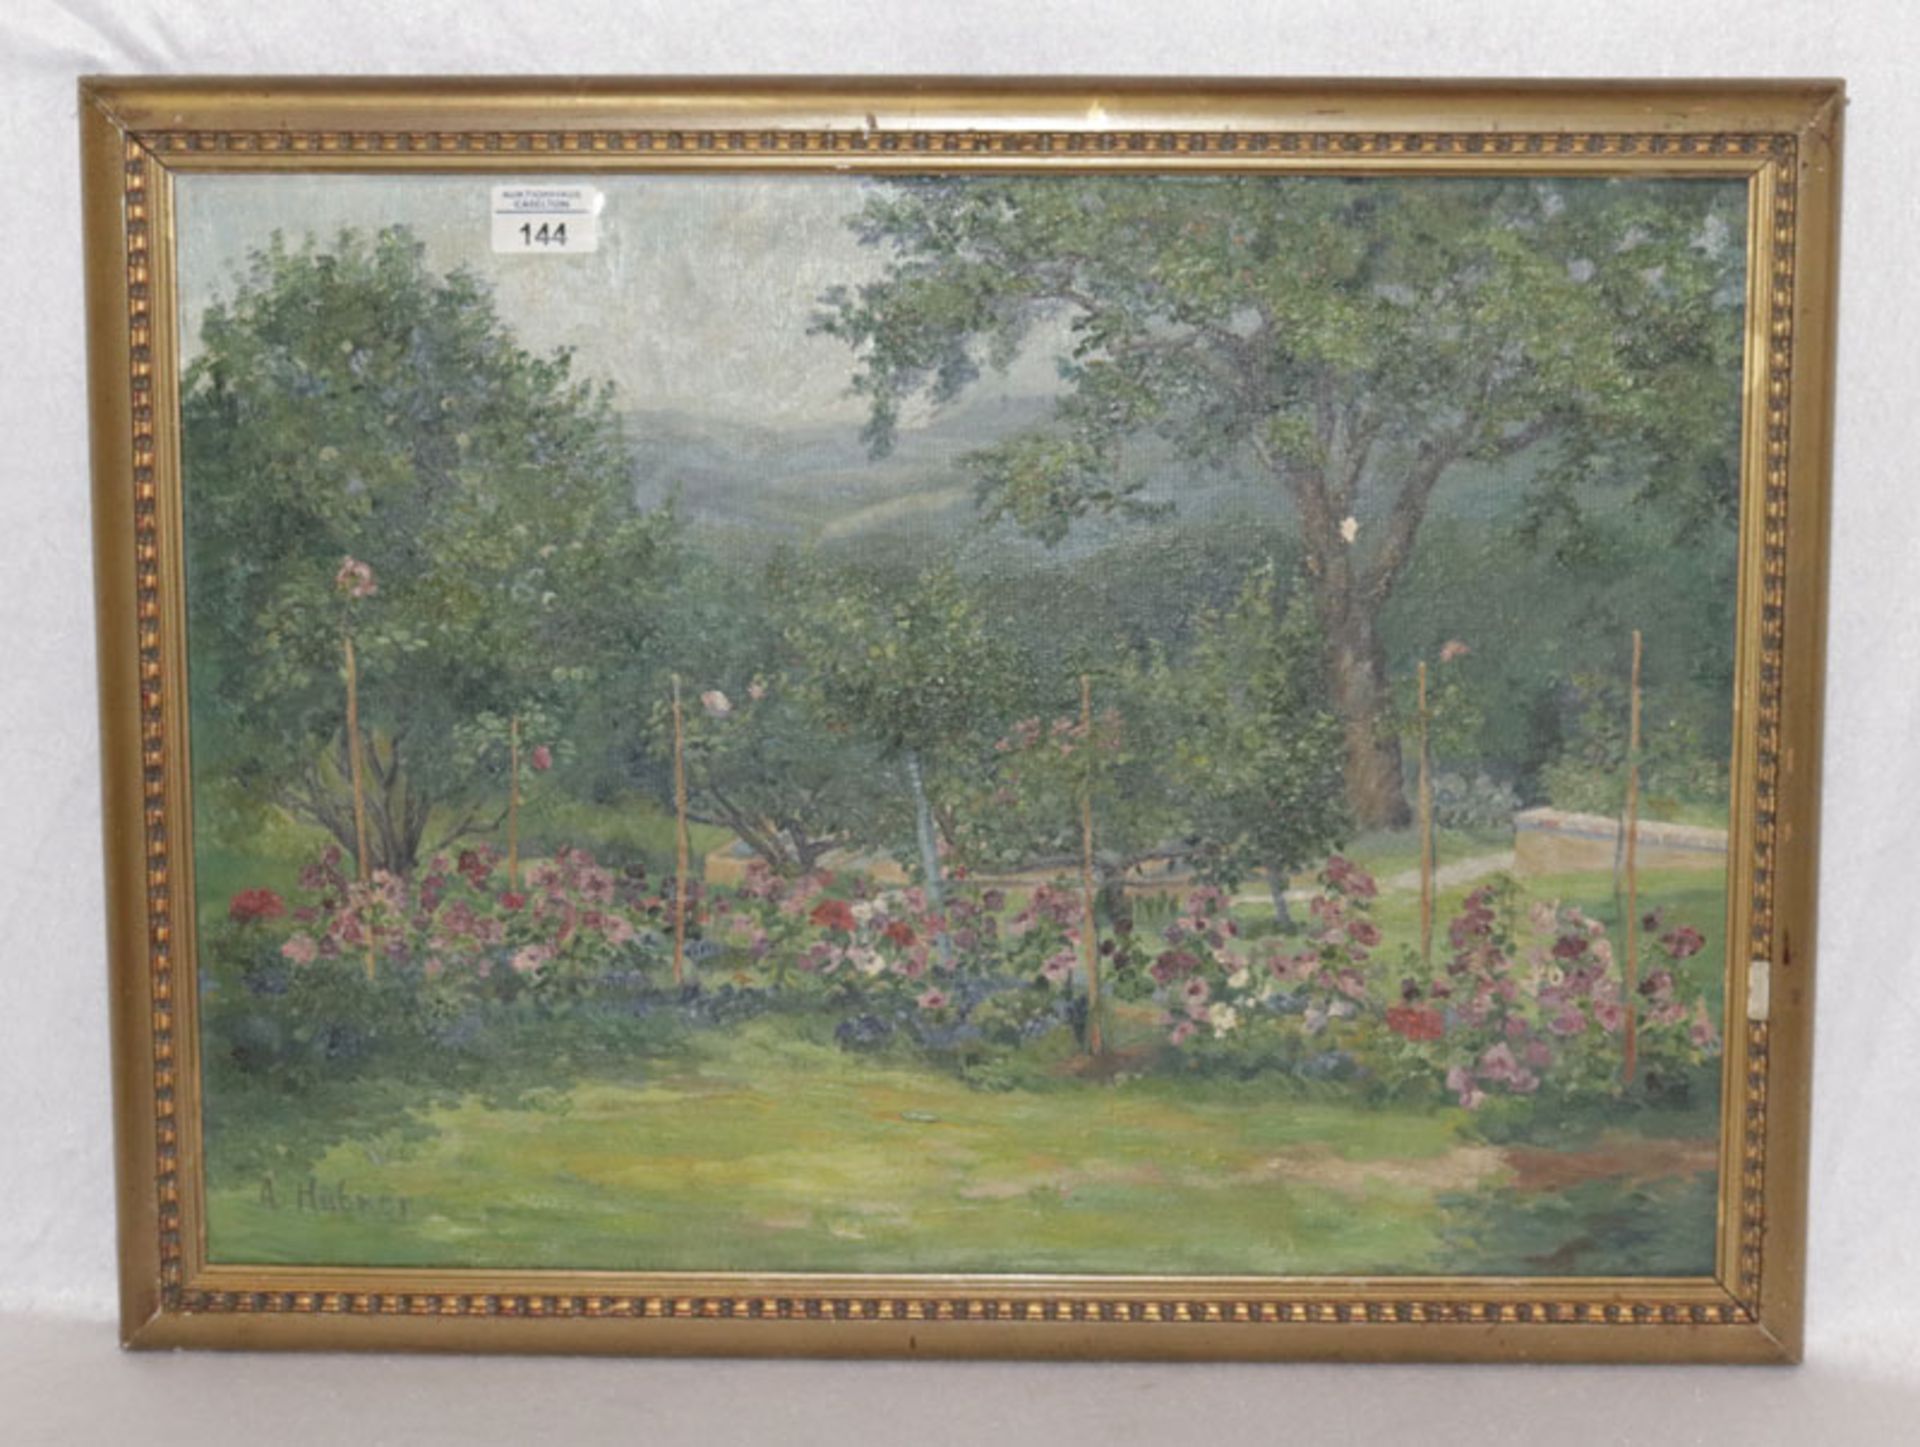 Gemälde ÖL/Malkarton 'Bauerngarten', signiert A. Hübner, Bildoberfläche mit kleine Farbablösung, ger